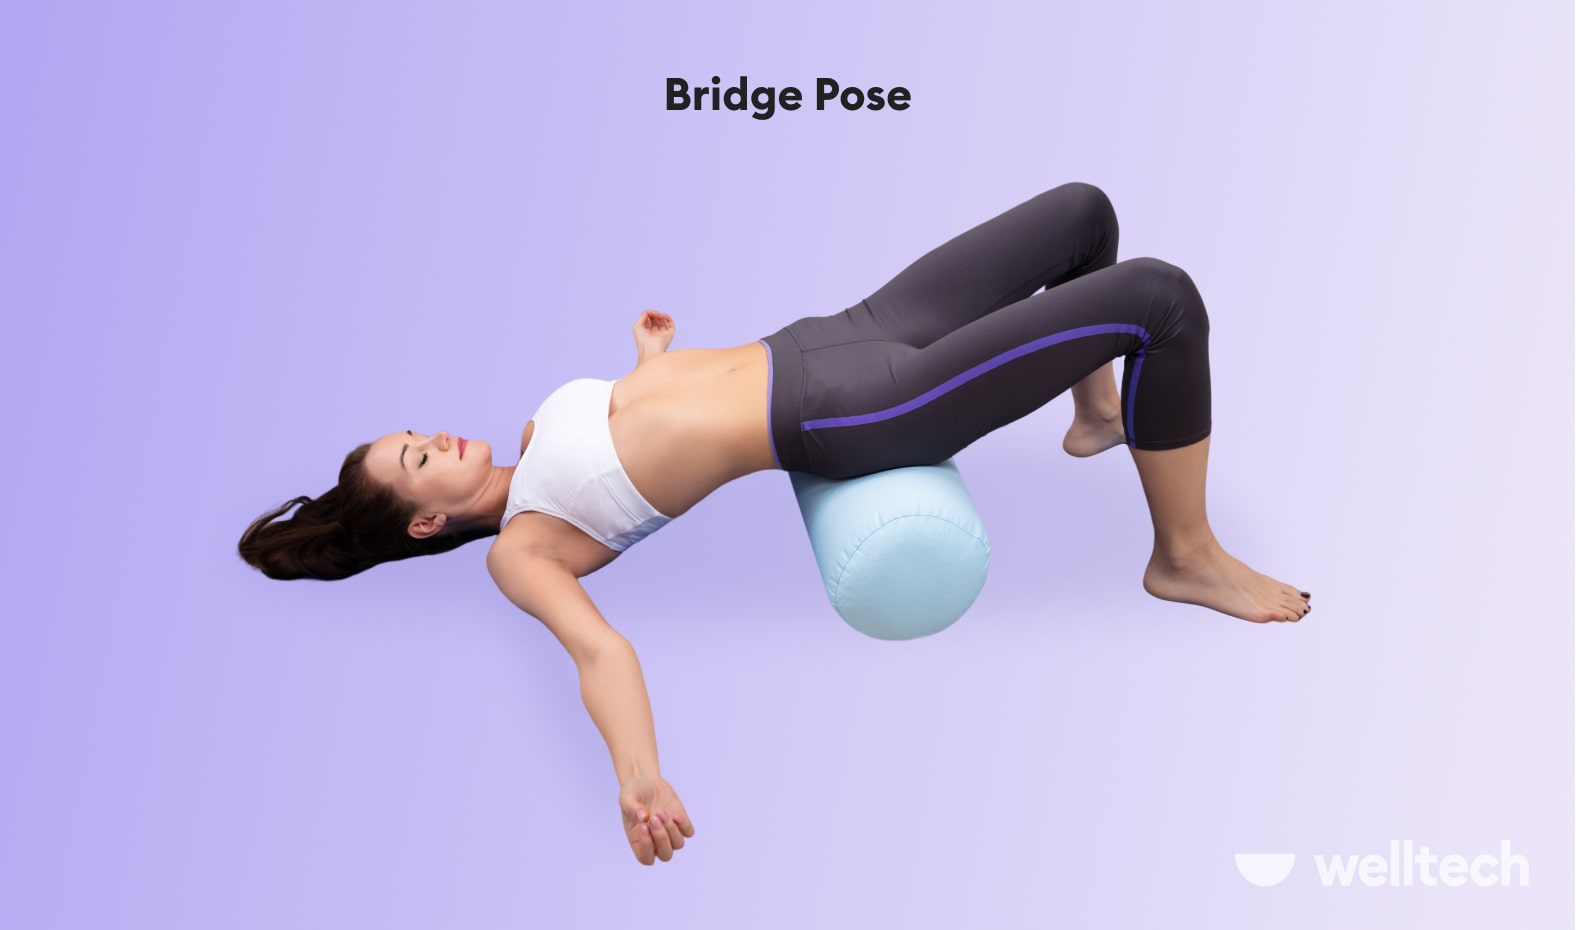 Yoga Bolster on X: Yoga Positions Names: 16 Basic Yoga Pose and